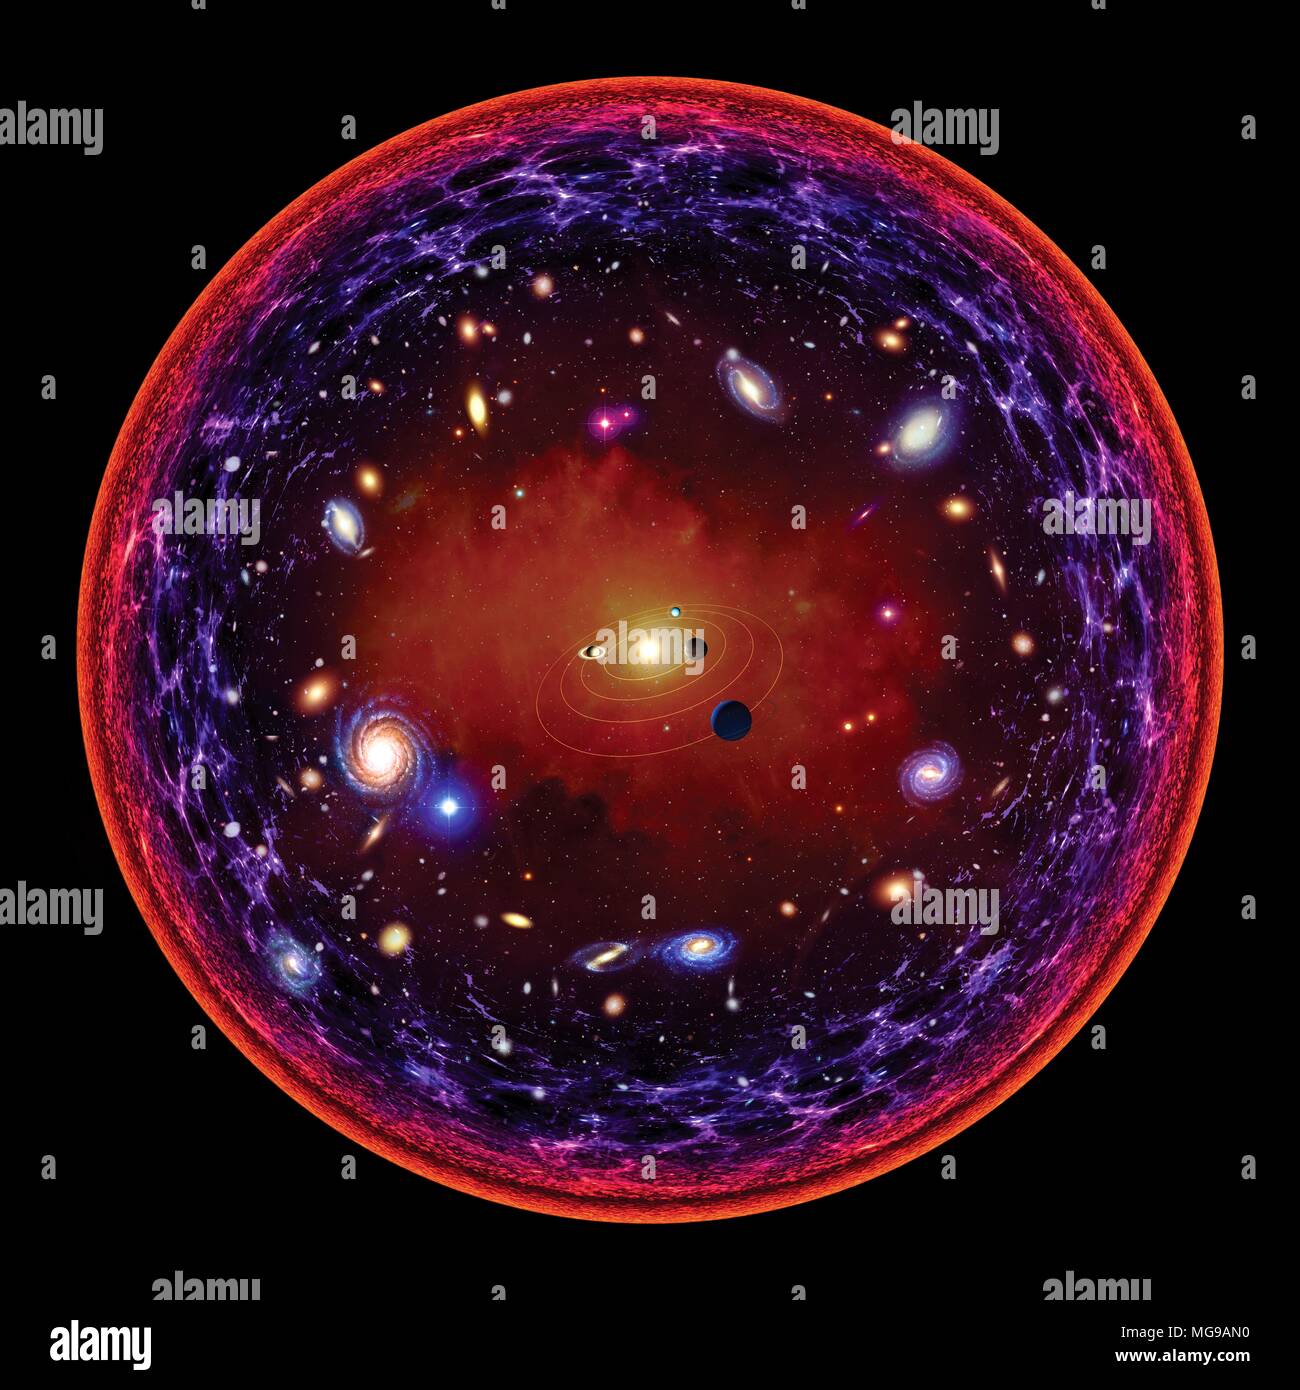 Una illustrazione concettuale dell'universo visibile. Al centro è il sistema solare. Come ci si allontana, incontriamo prima stelle, quindi galassie. Il più lontano nello spazio ci aspettiamo la più profonda indietro nel tempo possiamo vedere, a causa della limitata velocità della luce. Più lontano si può vedere è il punto in cui l'universo divenne trasparente - quando la densità della materia consentita fotoni di viaggiare attraverso l'universo senza assorbimento. Ciò è rappresentato in corrispondenza del bordo del cerchio. Foto Stock